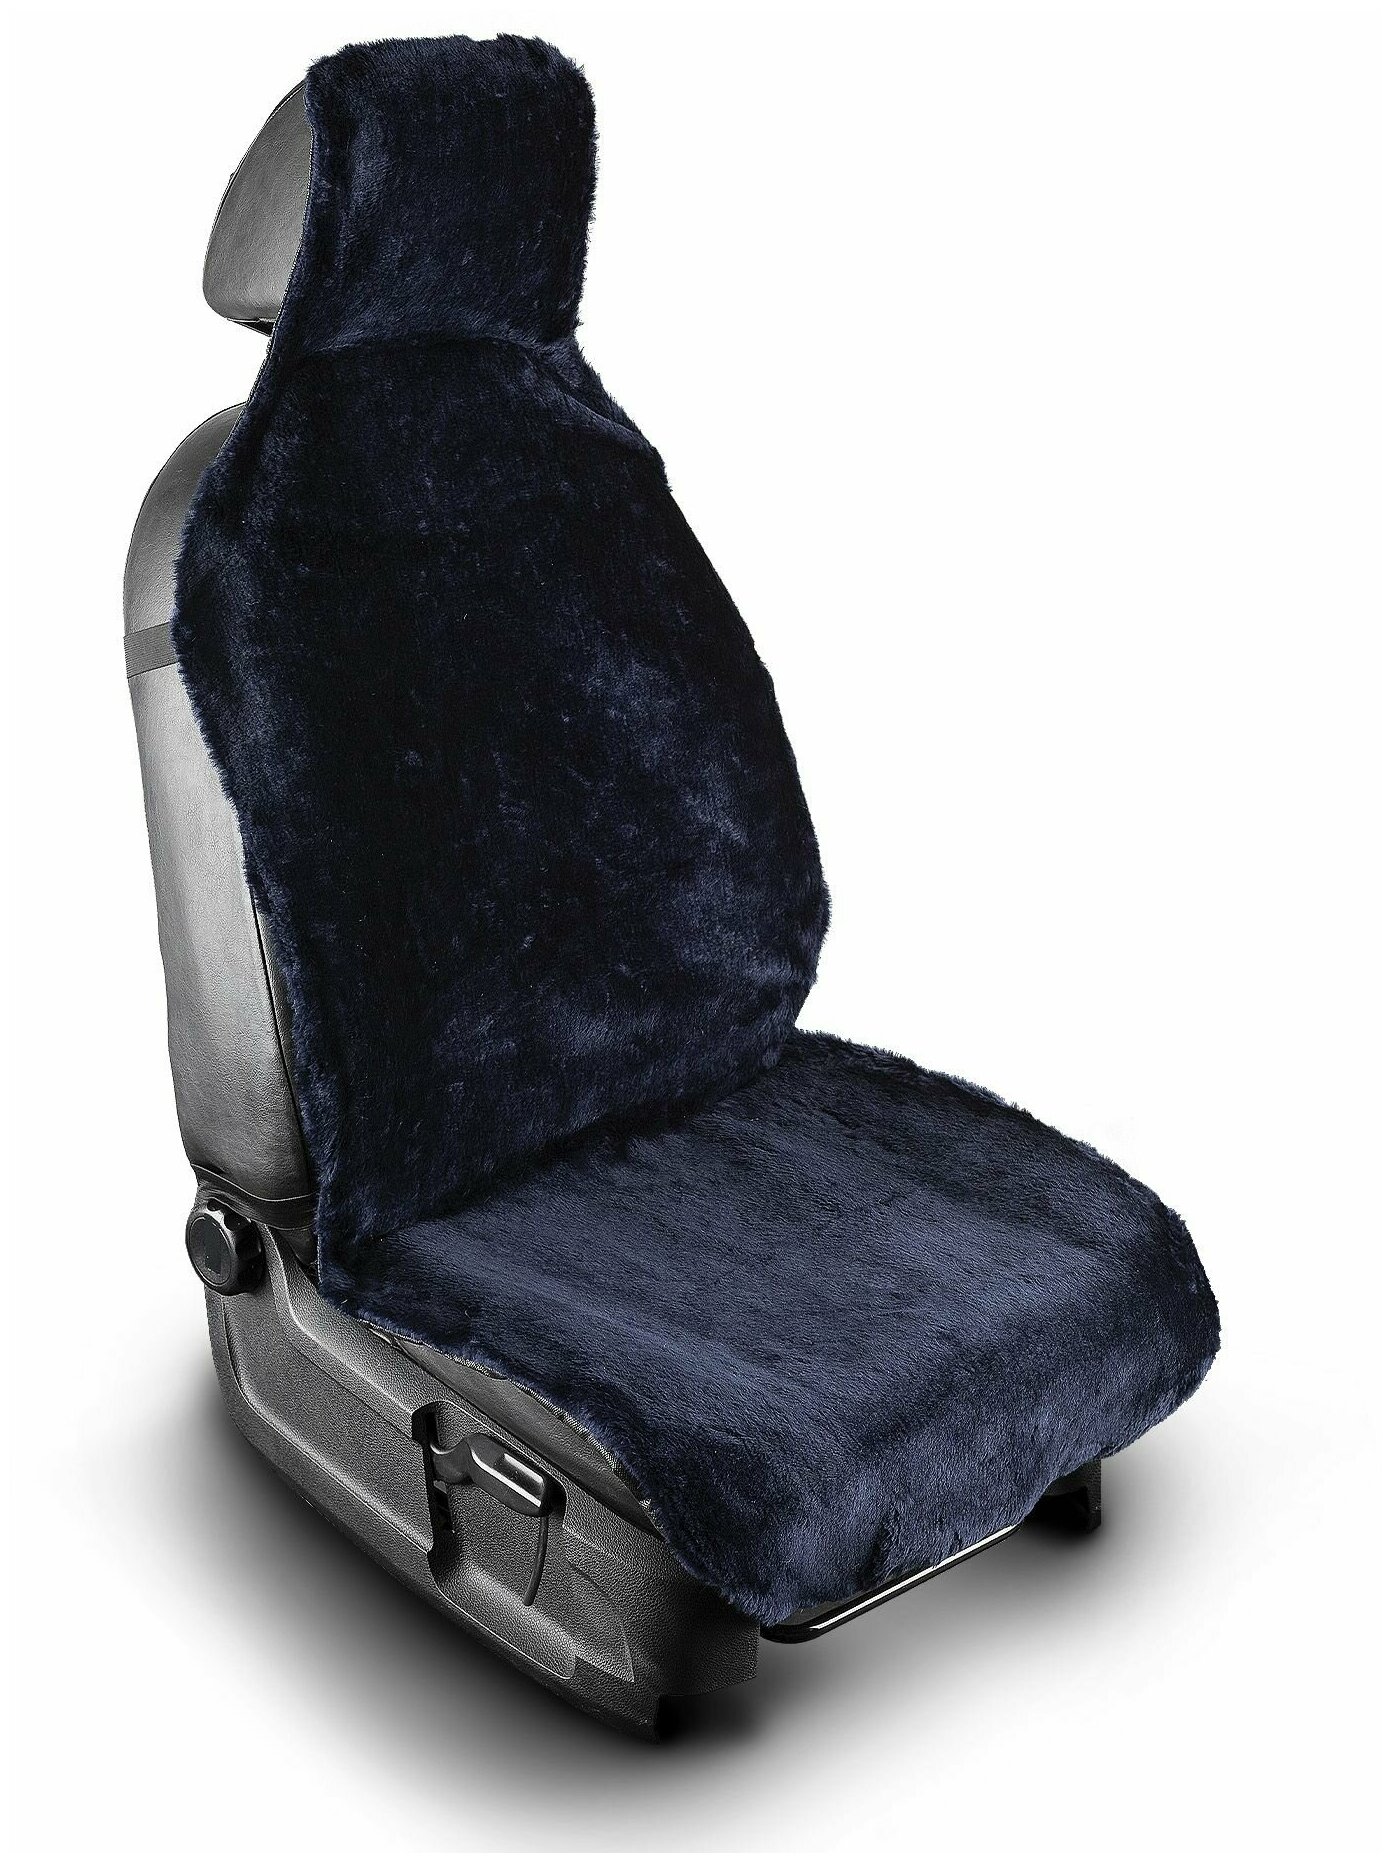 Меховая накидка на водительское автокресло или сиденье переднего ряда со слитным подголовником из синего мутона универсальные с нескользящим подкладом